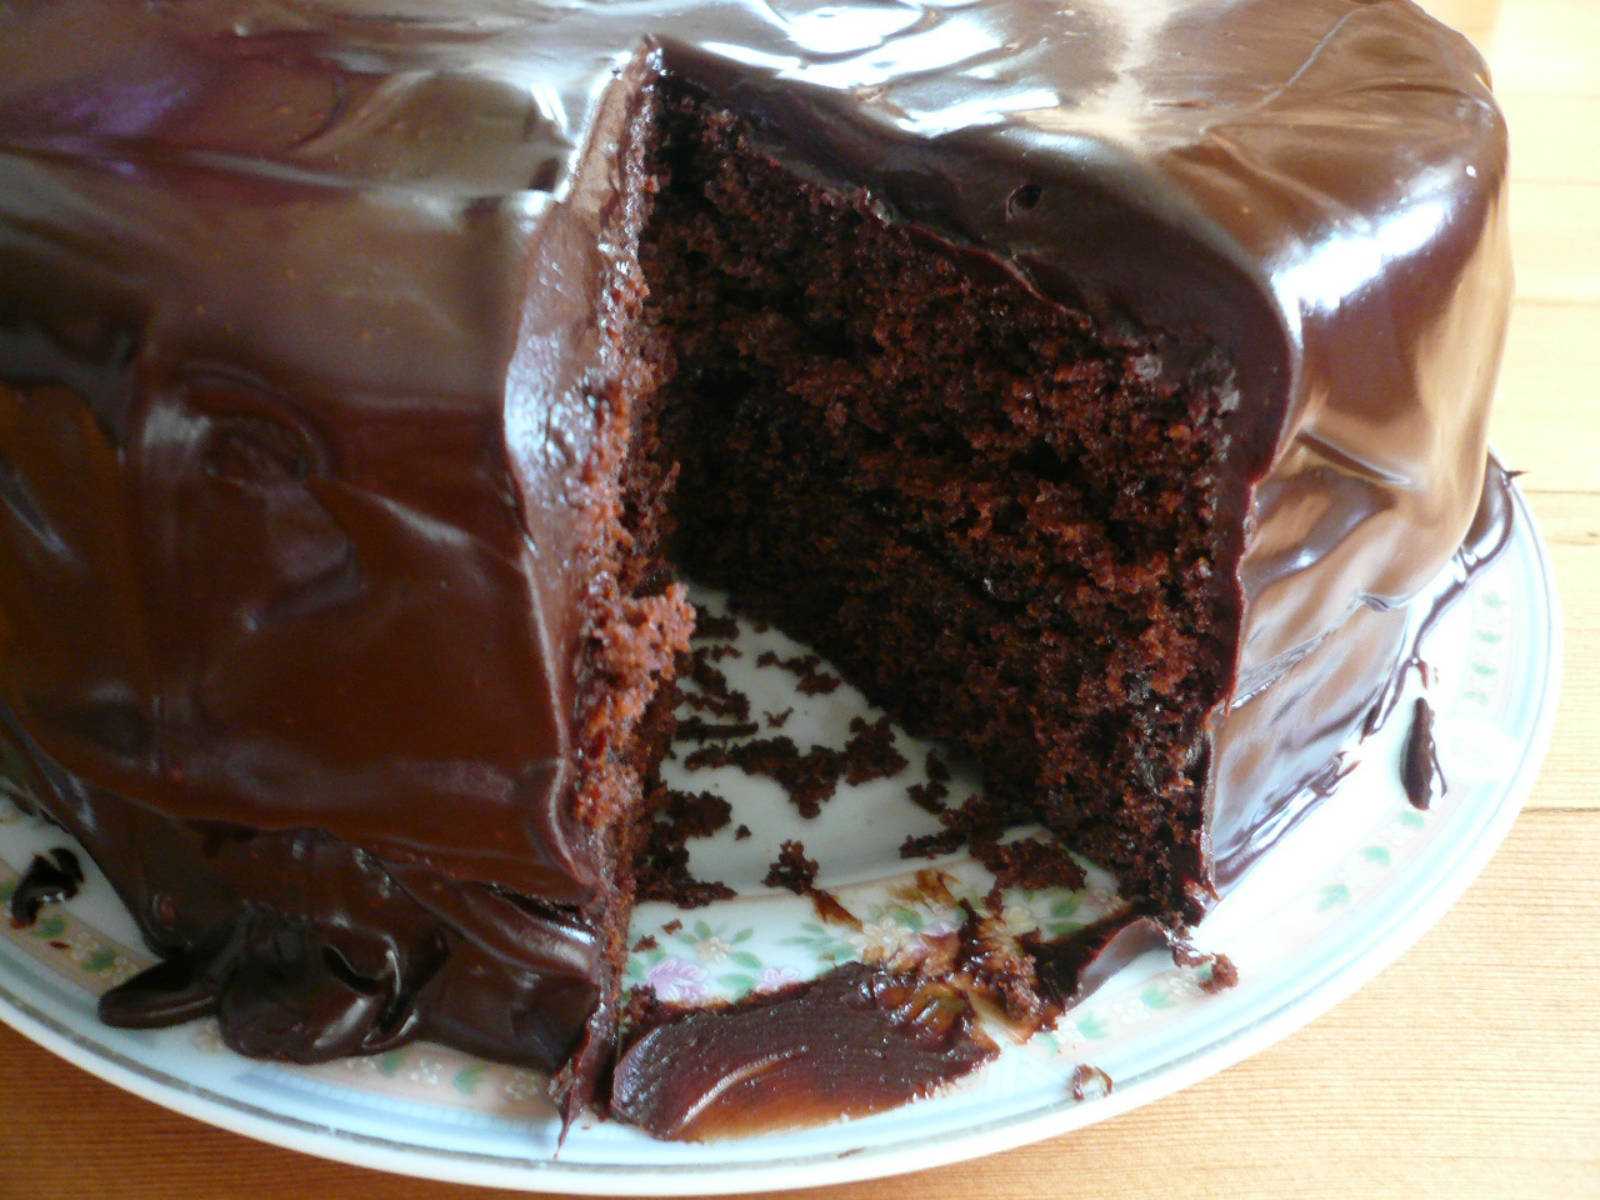 Шоколадный бисквит - 10 неимоверно вкусных фото рецептов